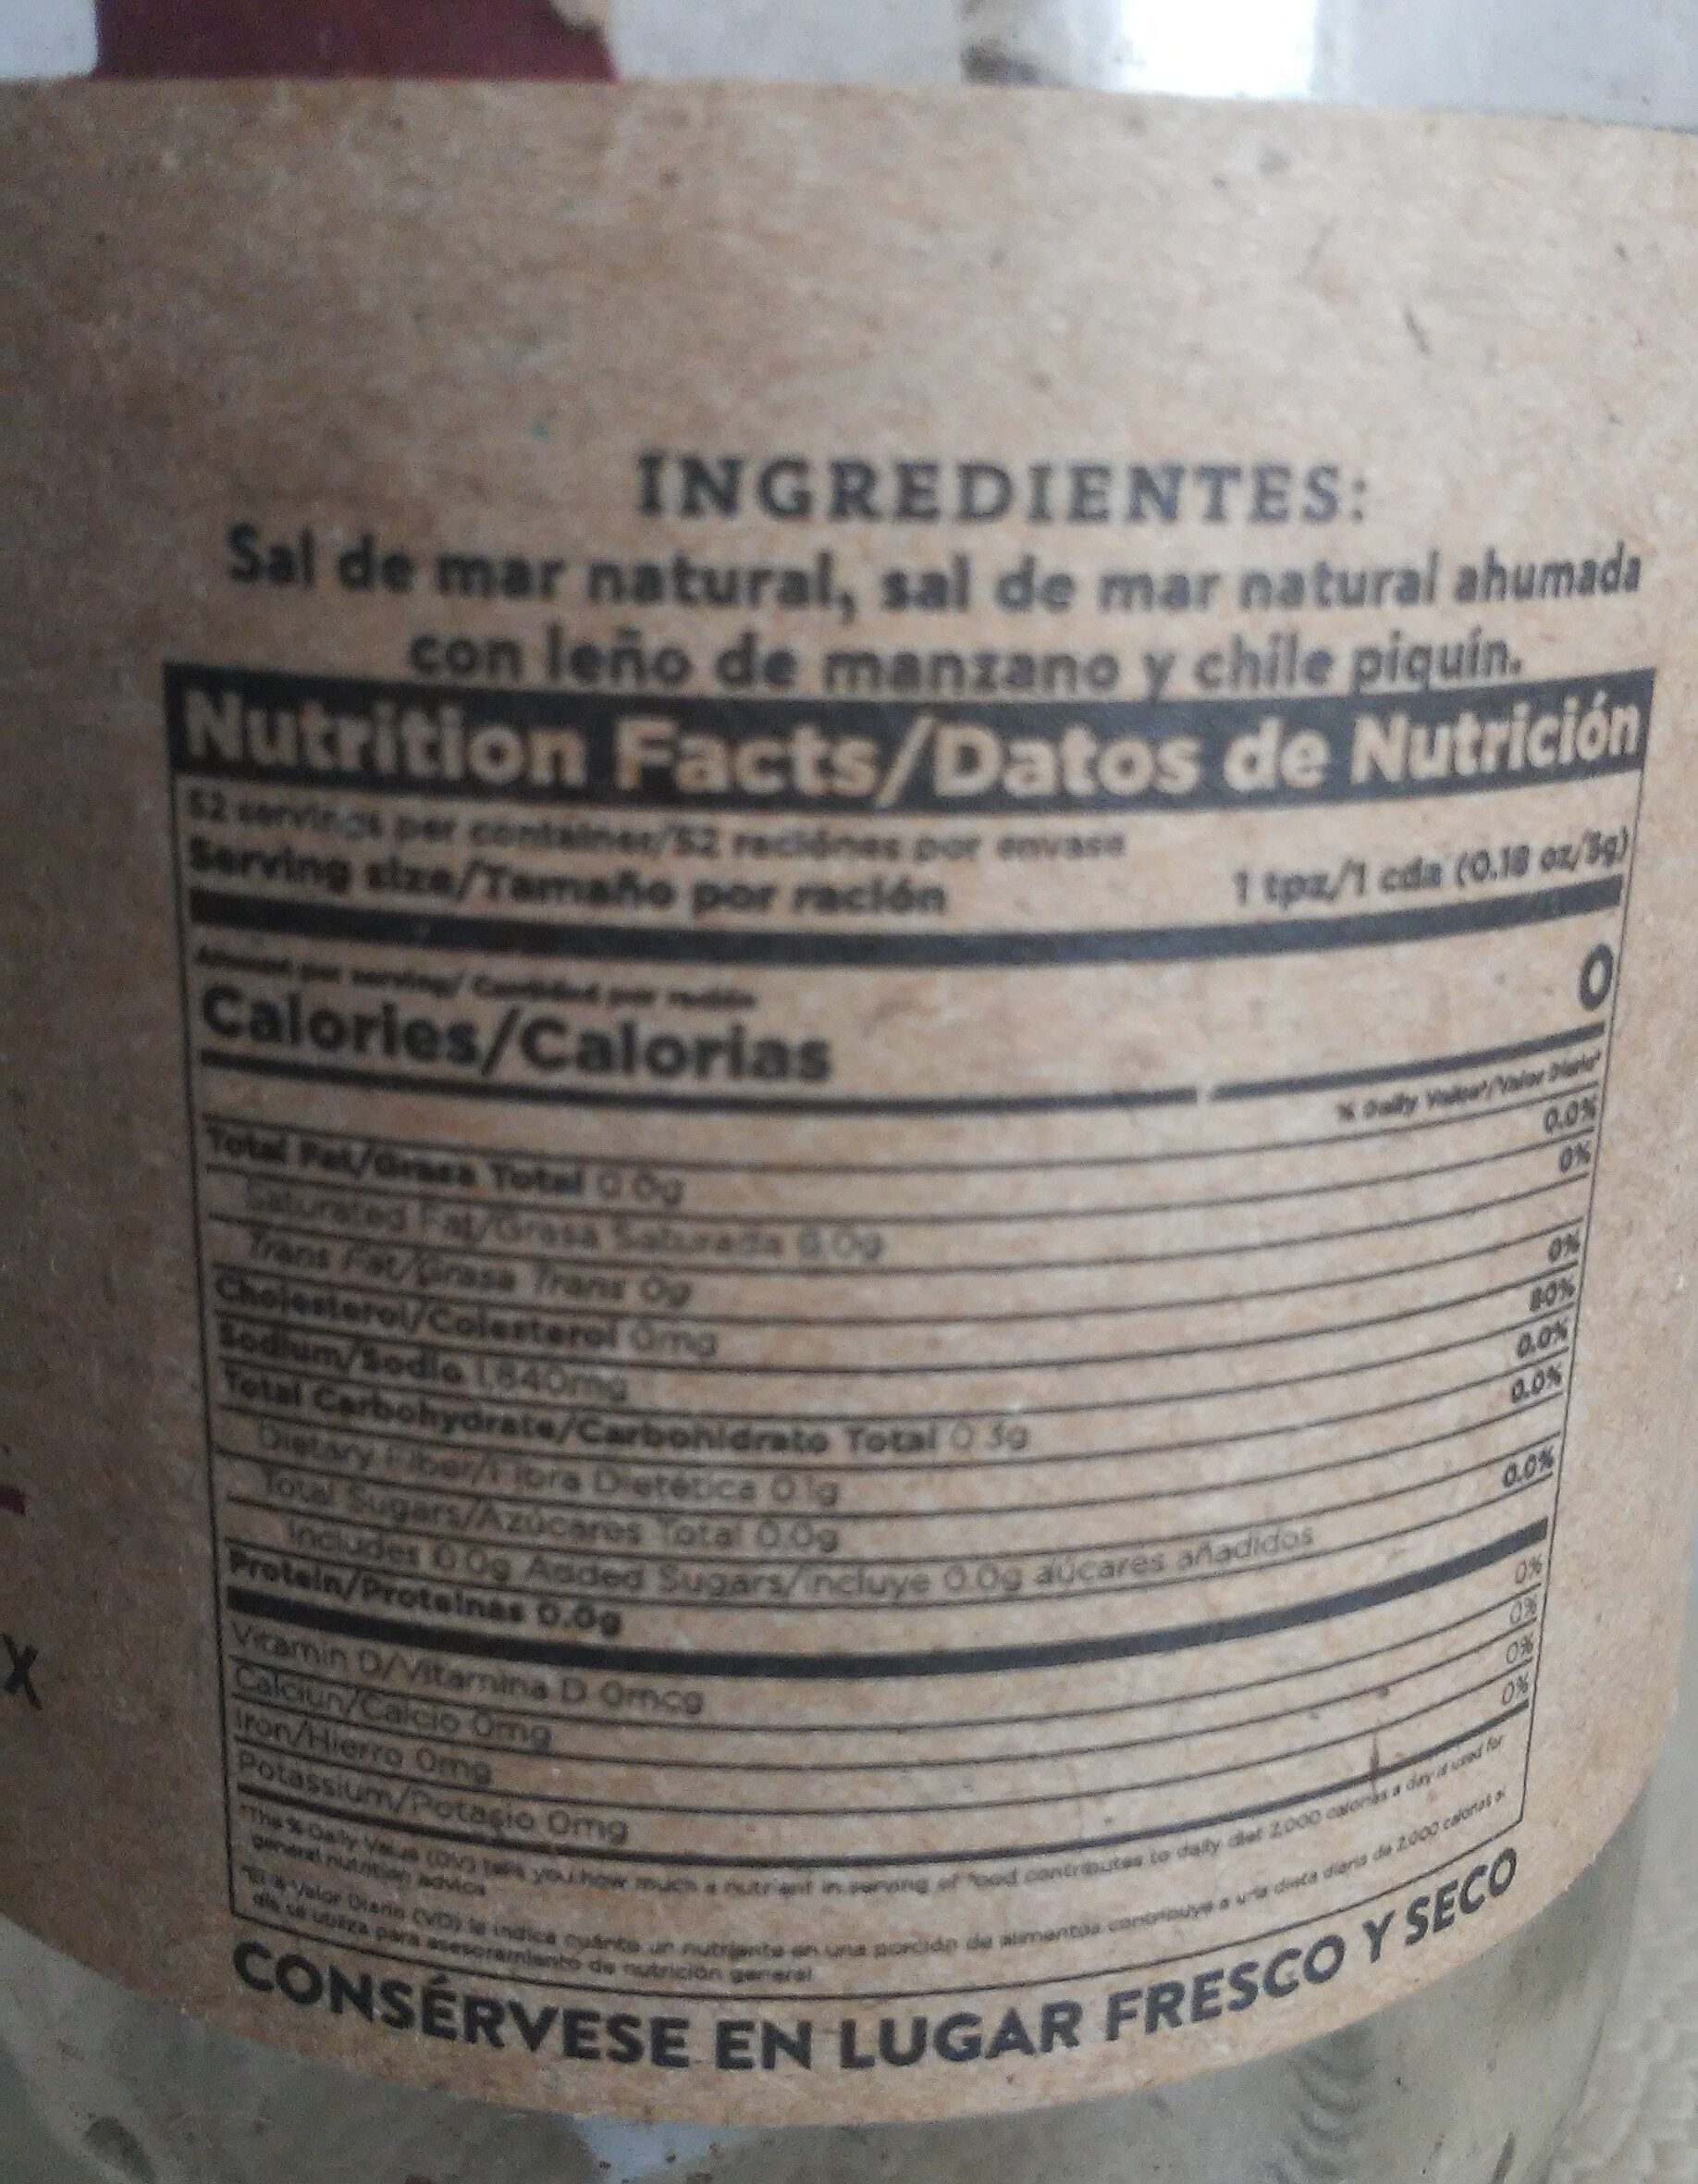 Sal de mar ahumada en manzano - Información nutricional